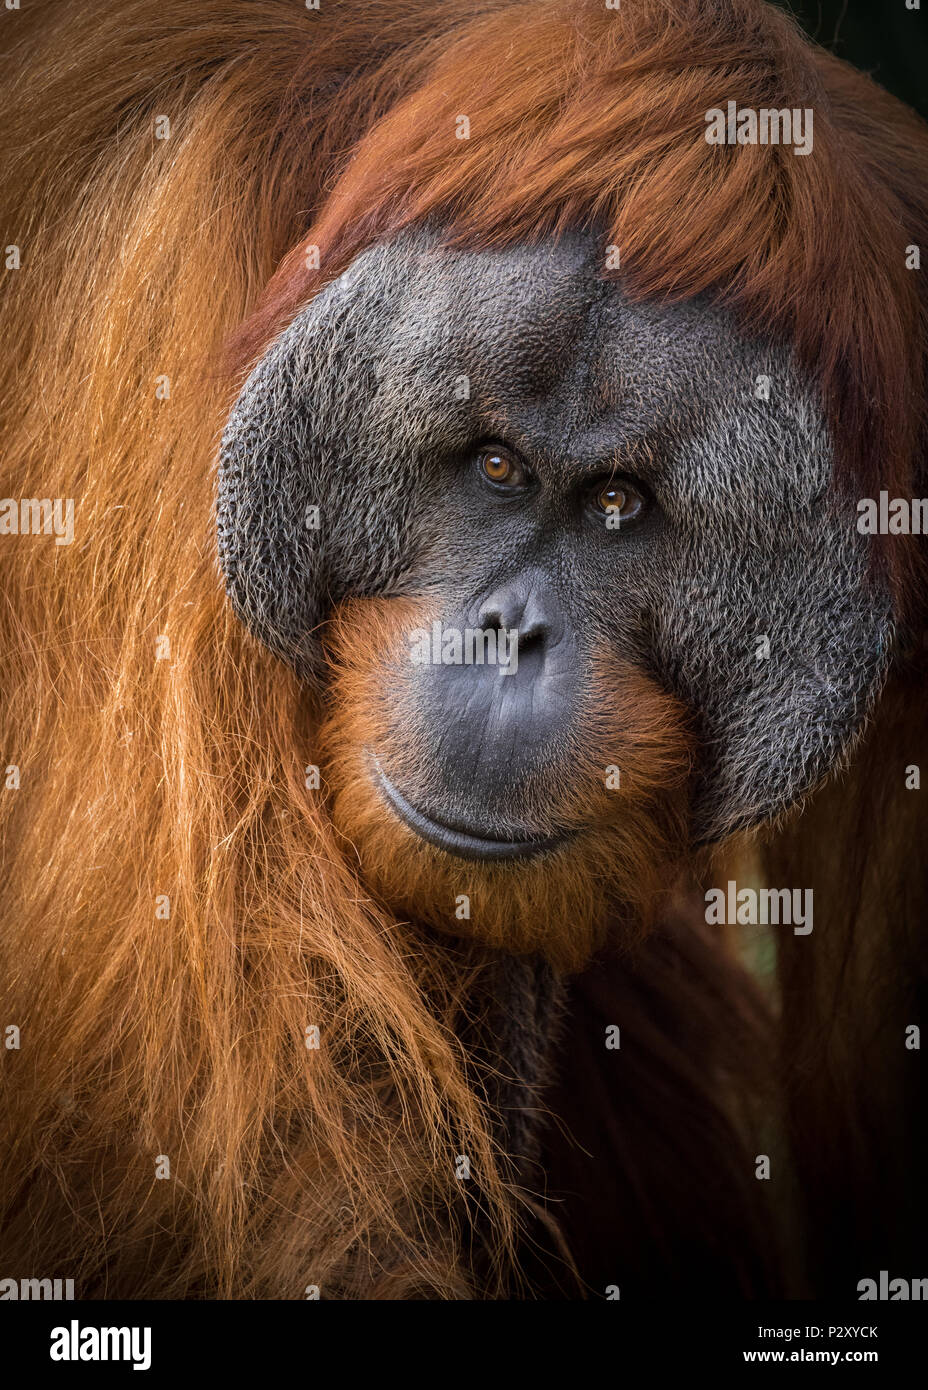 Un captive di Sumatra Orangutan allo zoo in Sud Australia. Orangutan di Sumatra sono criticamente in pericolo a causa di perdita di habitat per l'olio di palma piantagioni. Foto Stock